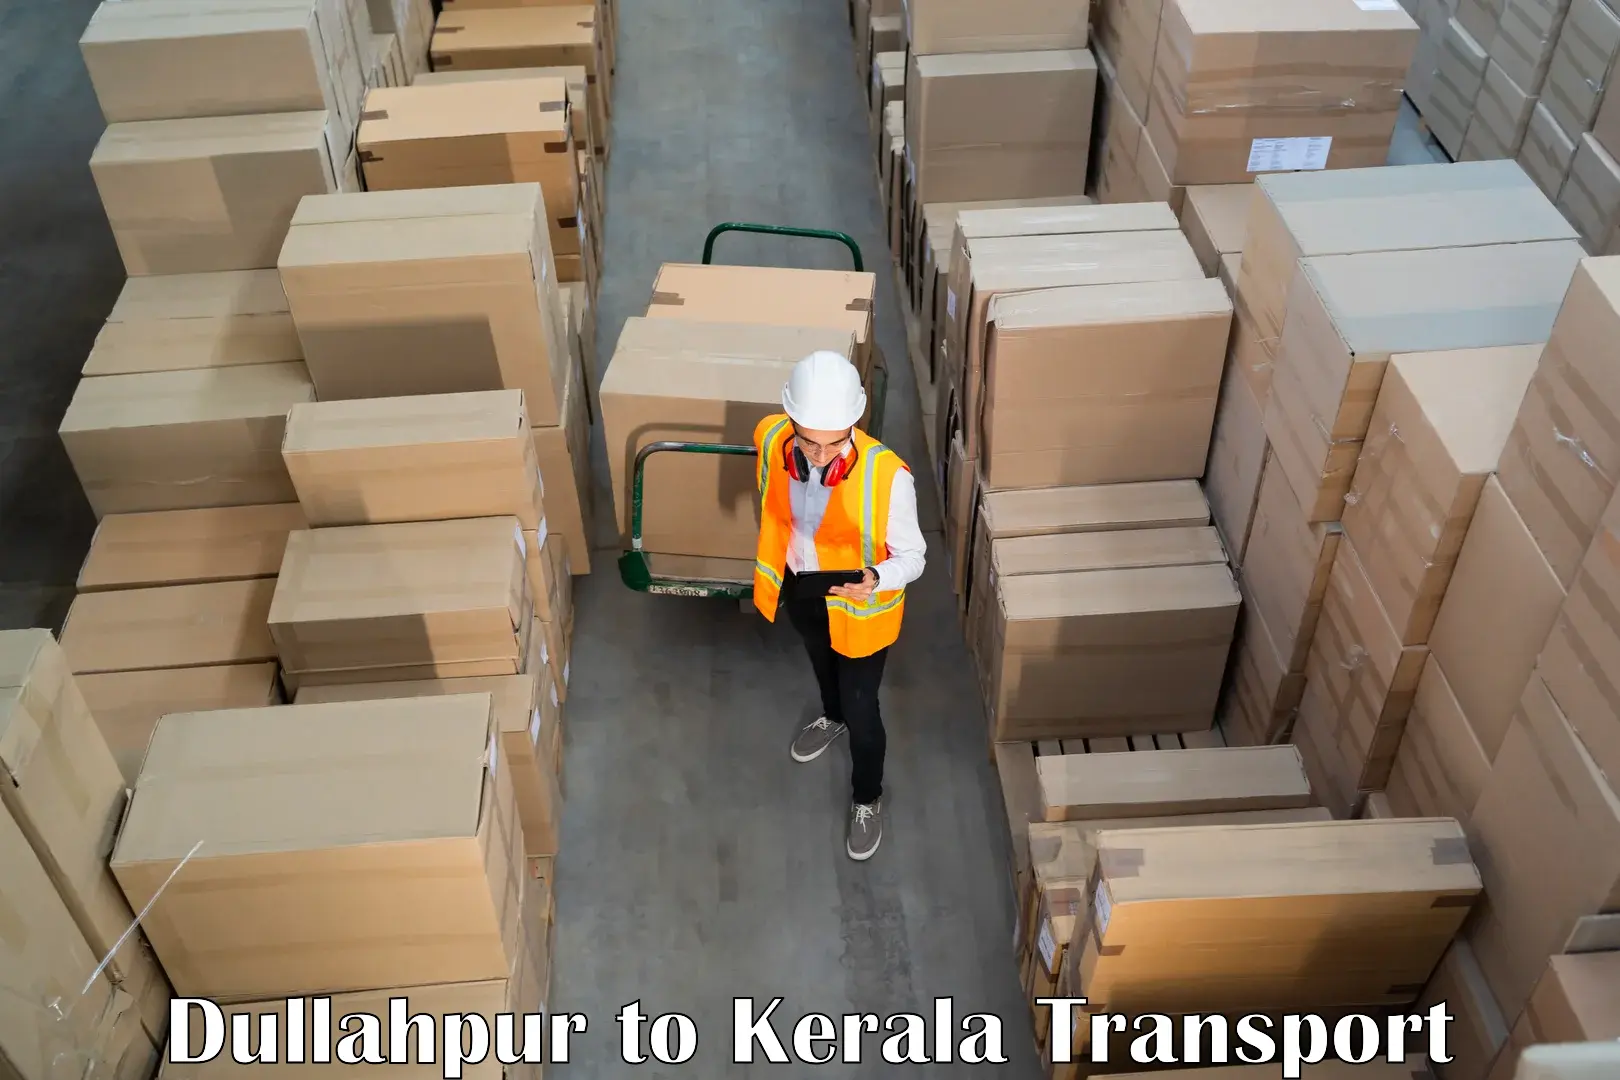 Pick up transport service in Dullahpur to Manthuka